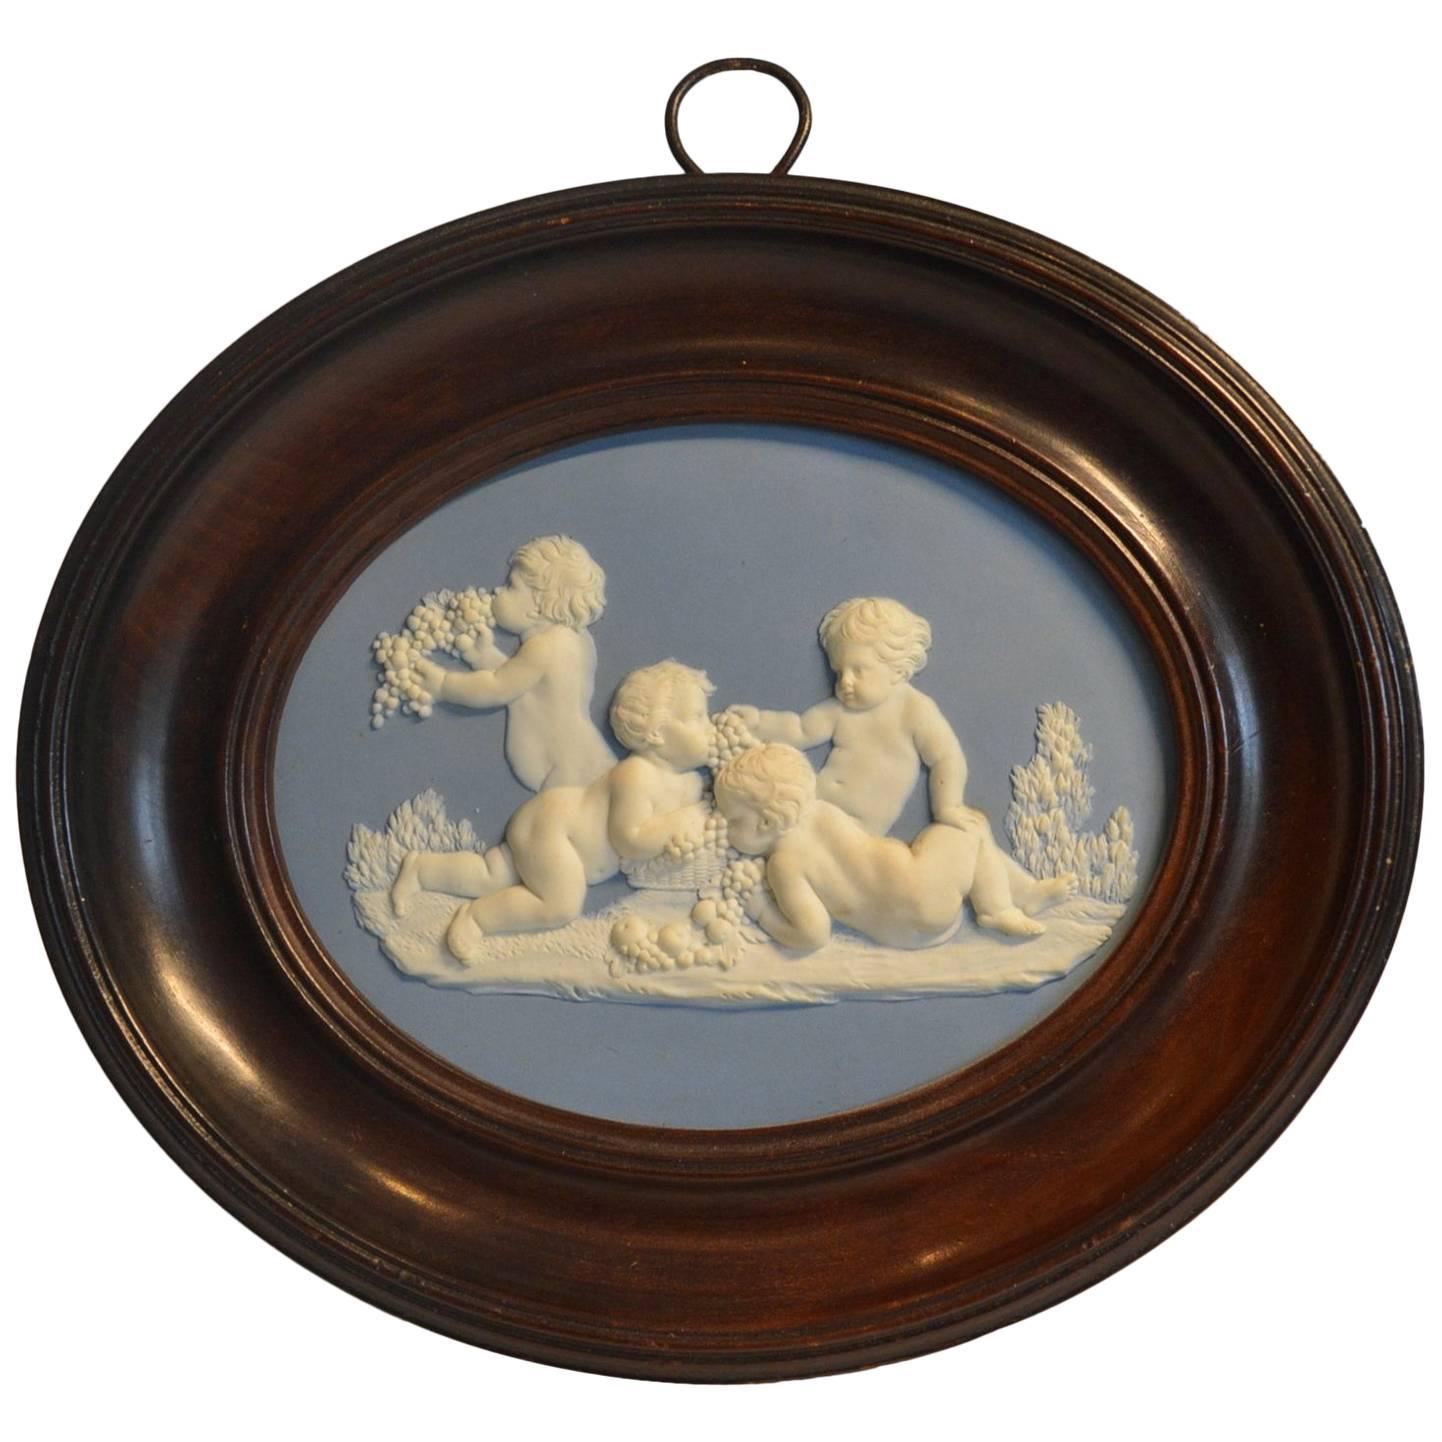 Framed Jasper Medallion, Bacchanalian Boys, Wedgwood & Bentley, circa 1778